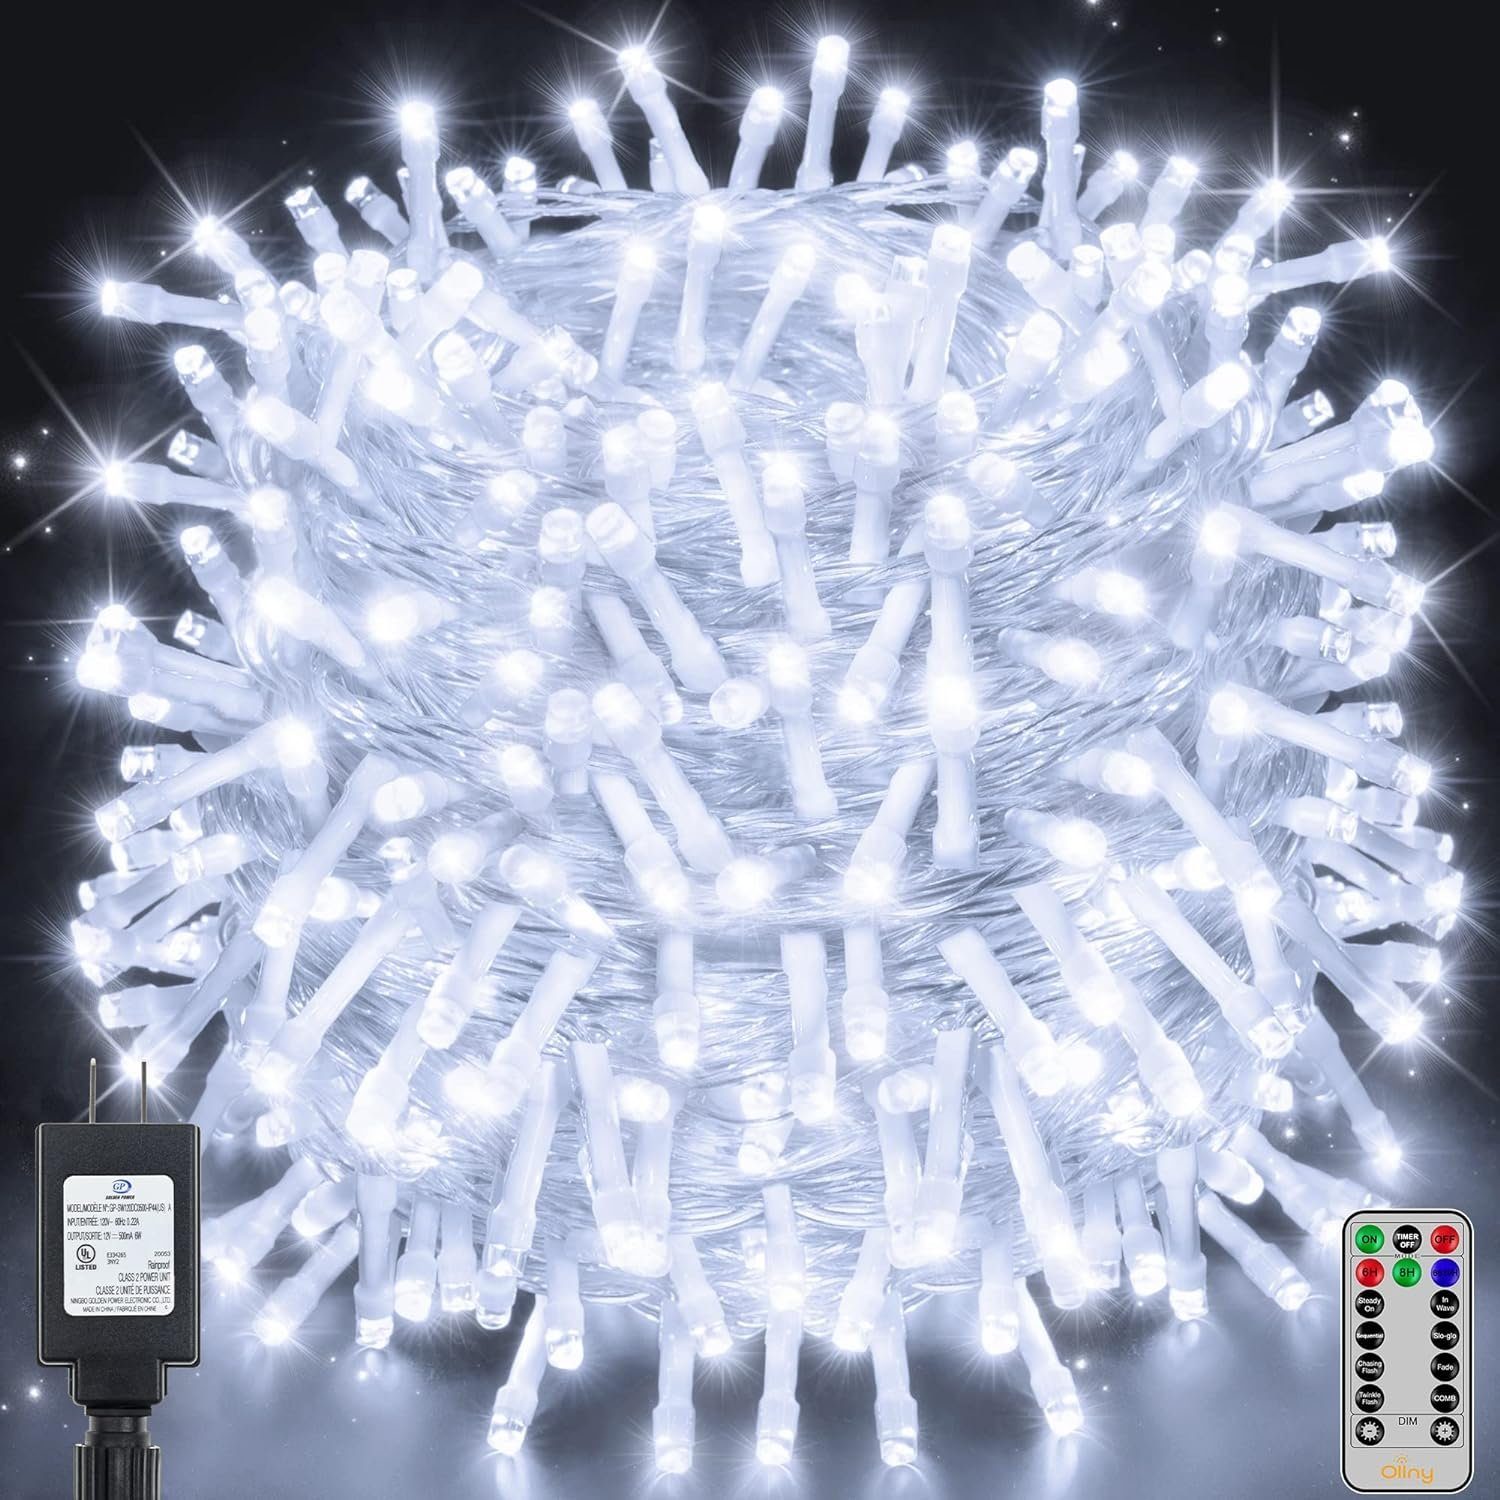 Diyarts LED-Lichterkette, 600-flammig, 60m LED vielseitige Beleuchtung, 8 Modi, 4 Helligkeitsstufen.